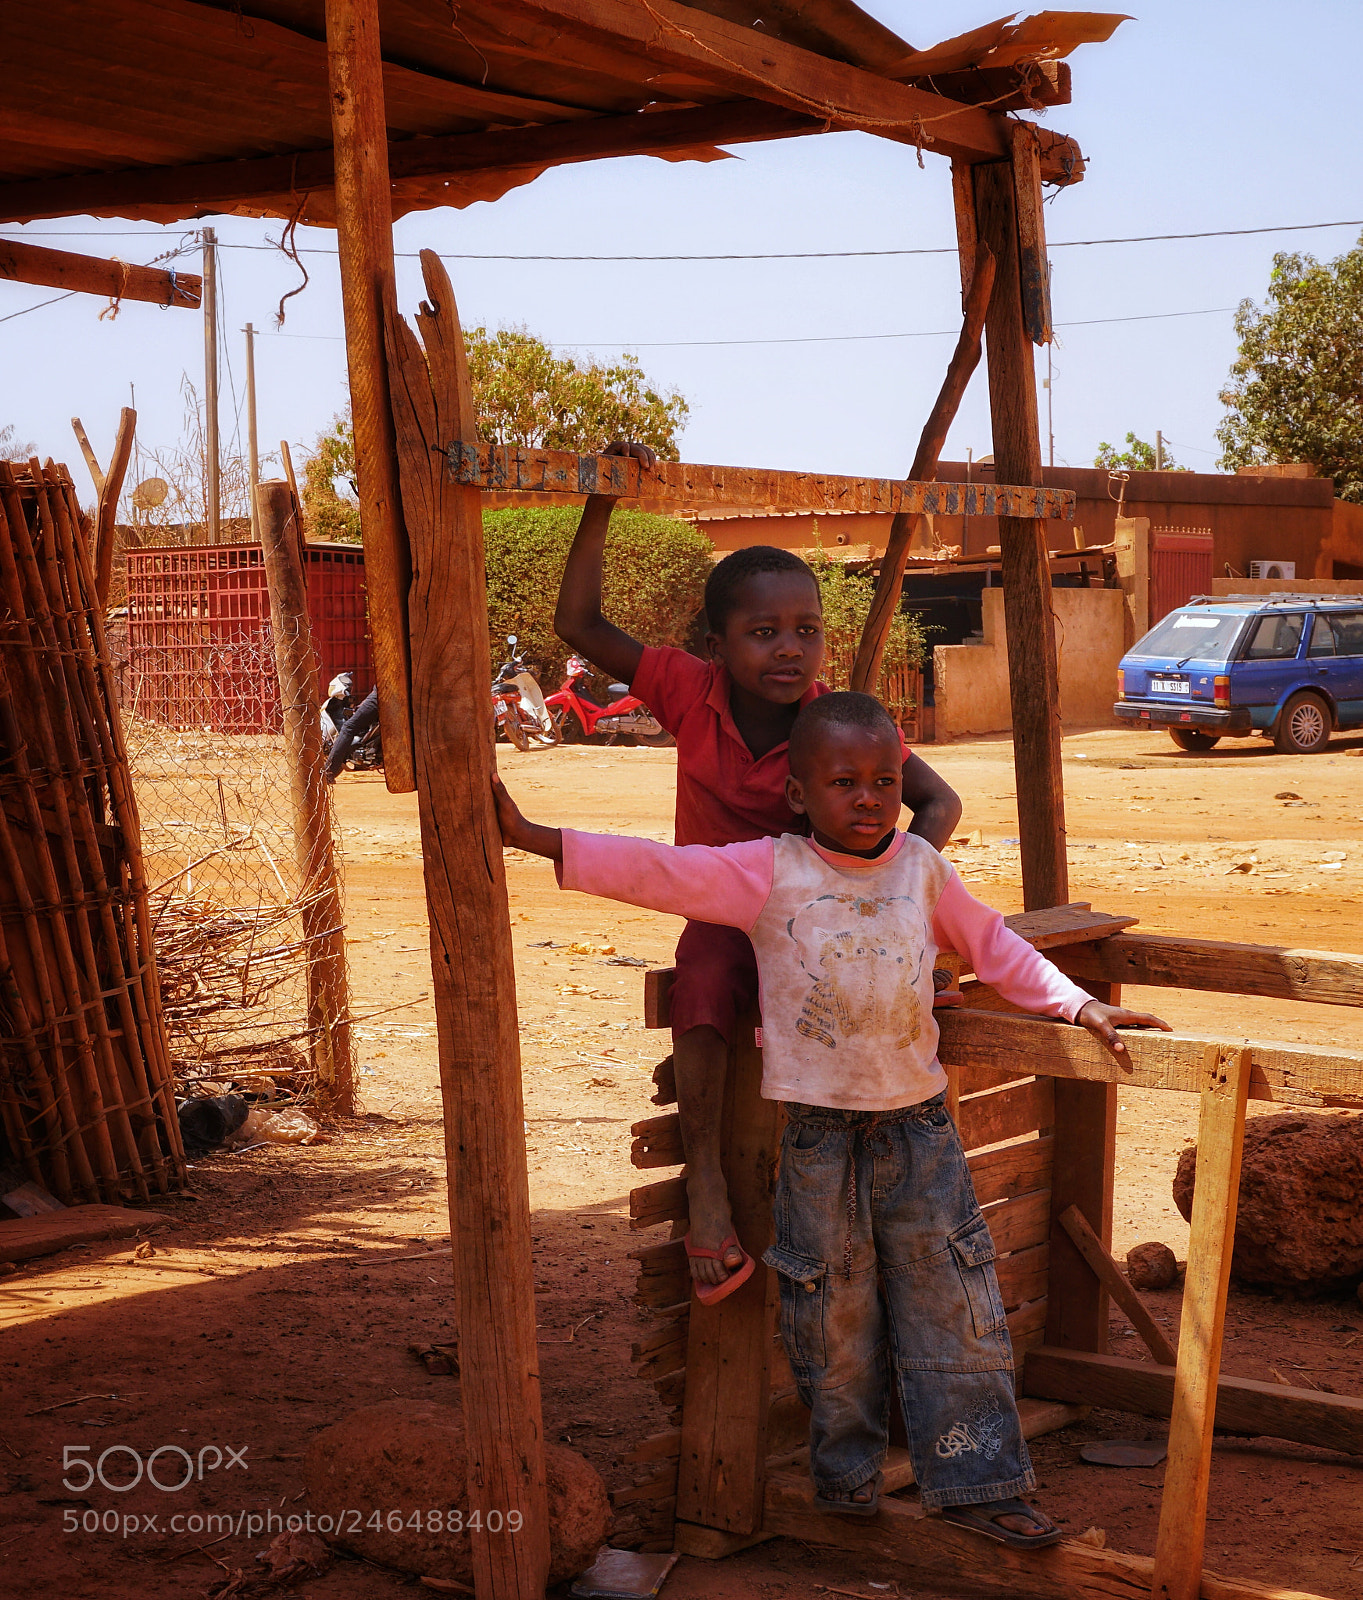 Sony a6300 sample photo. Ouagadougou childeren photography